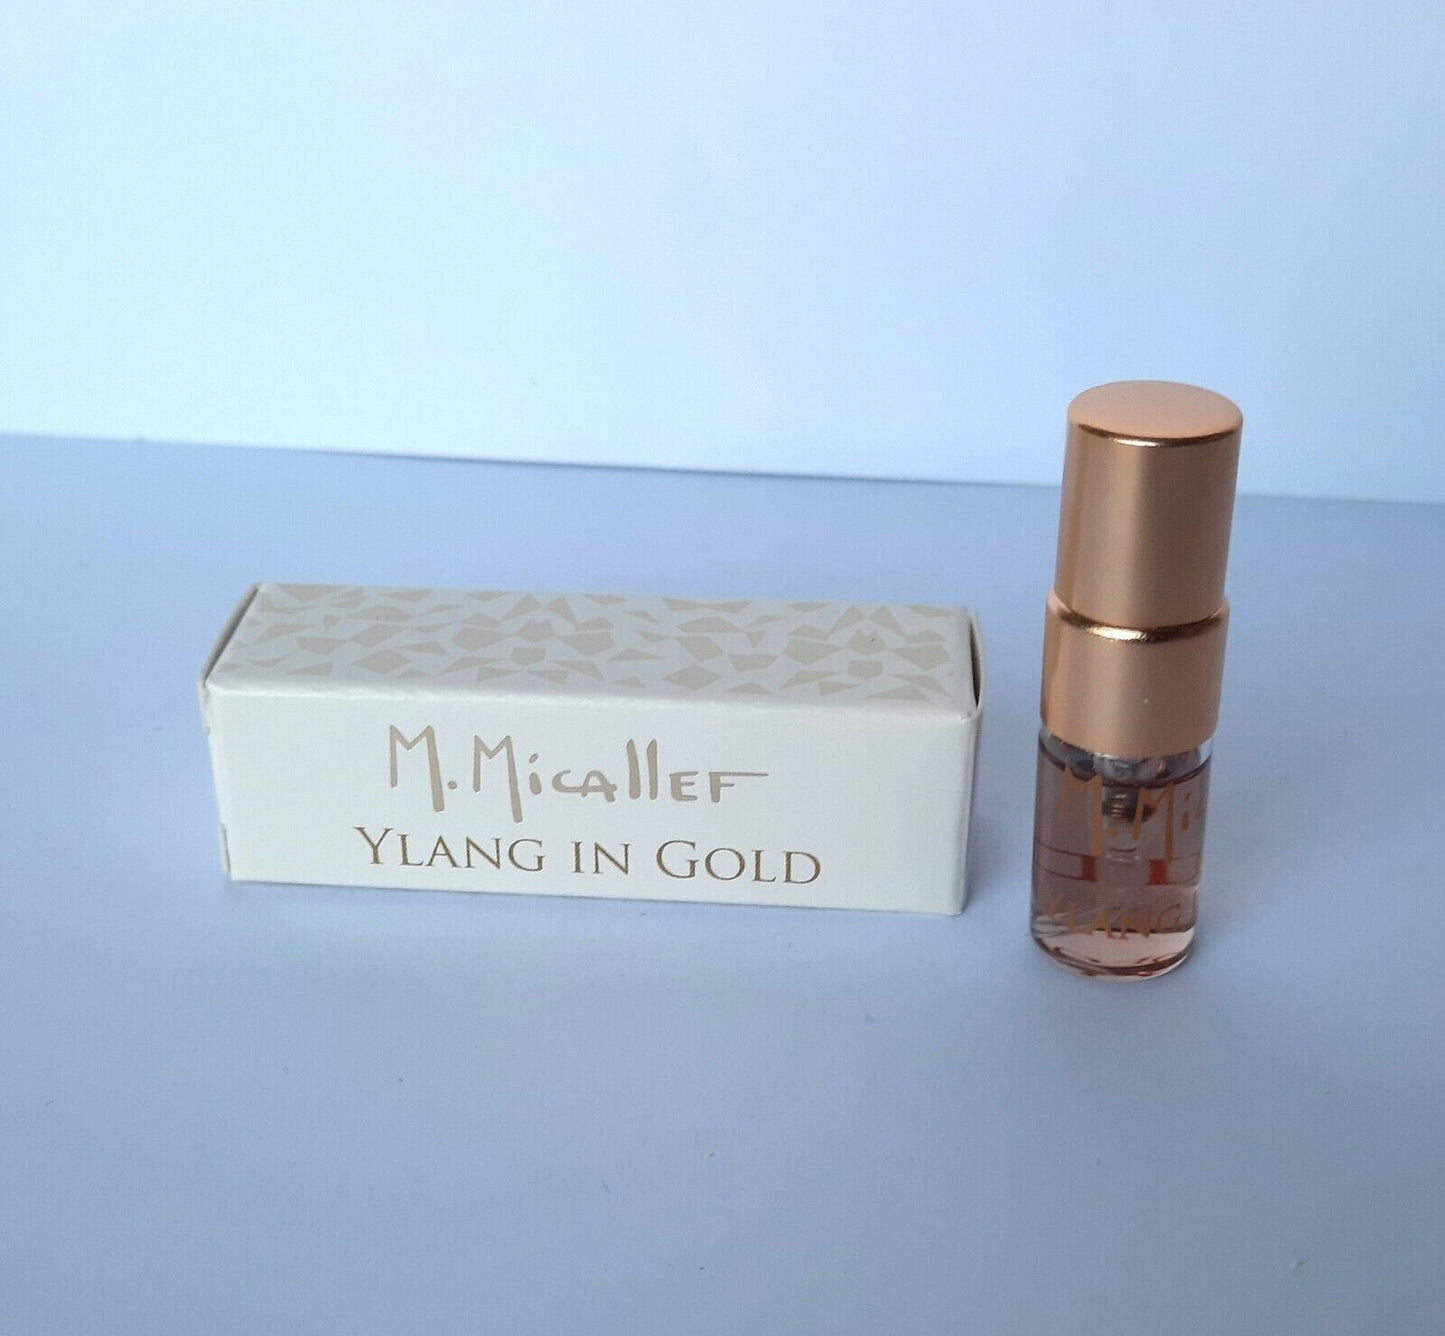 M. Micallef Ylang Altın 2ml 0.06 Fl. Öz. resmi parfüm örneği